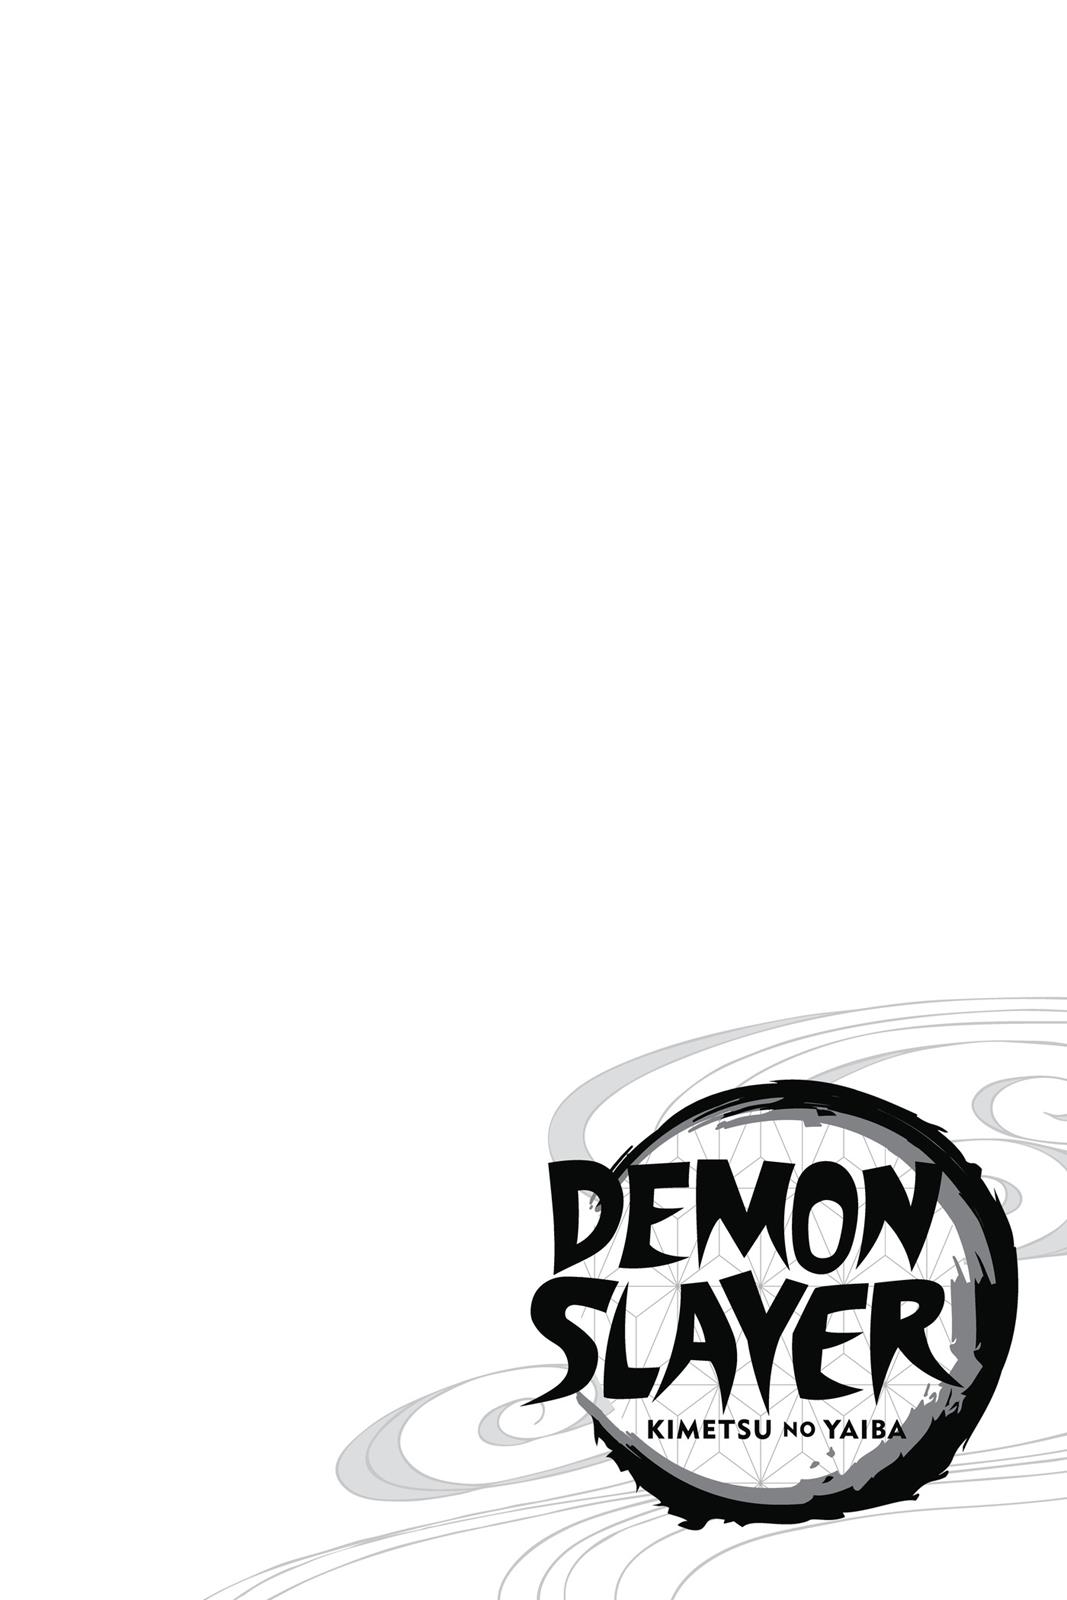 Demon Slayer Manga Manga Chapter - 1 - image 5